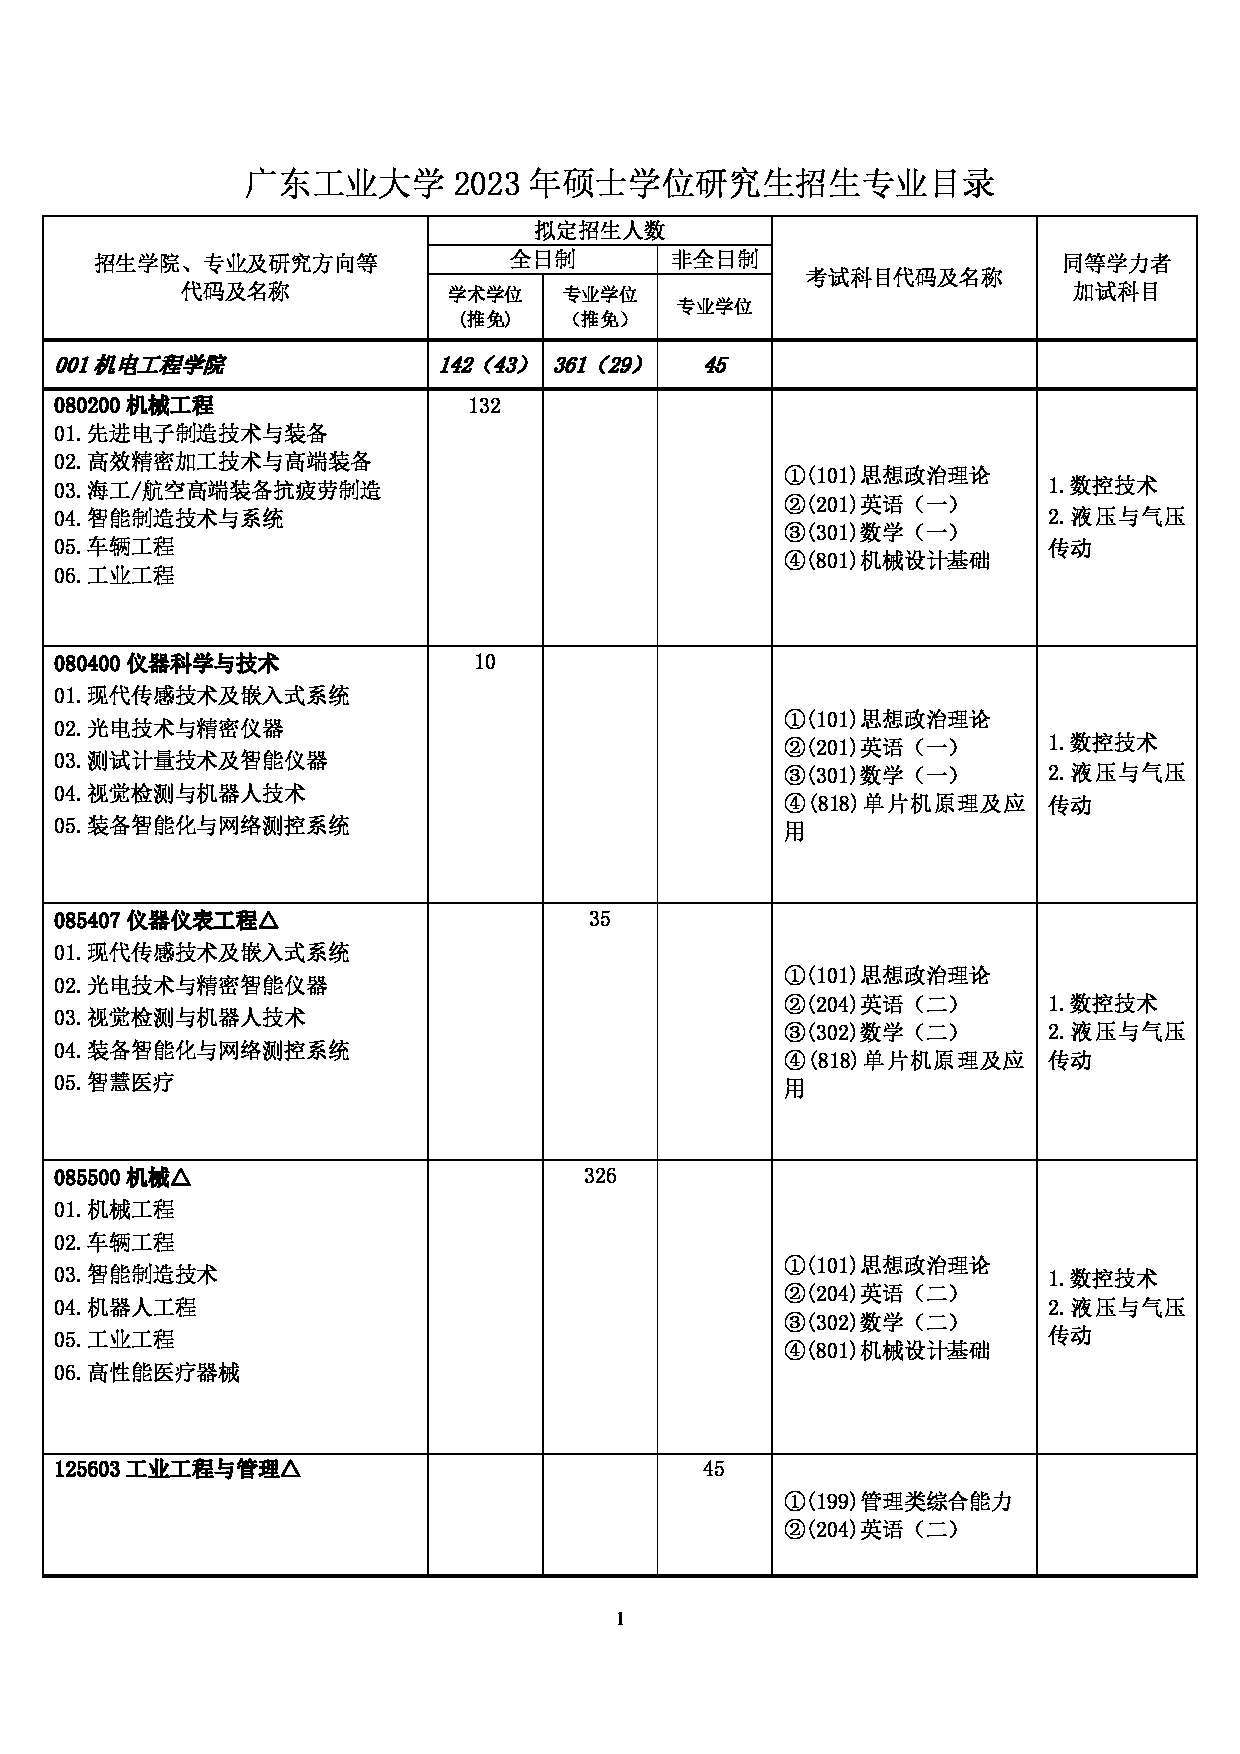 2023招生目录:广东工业大学2023年硕士学位研究生招生目录第1页